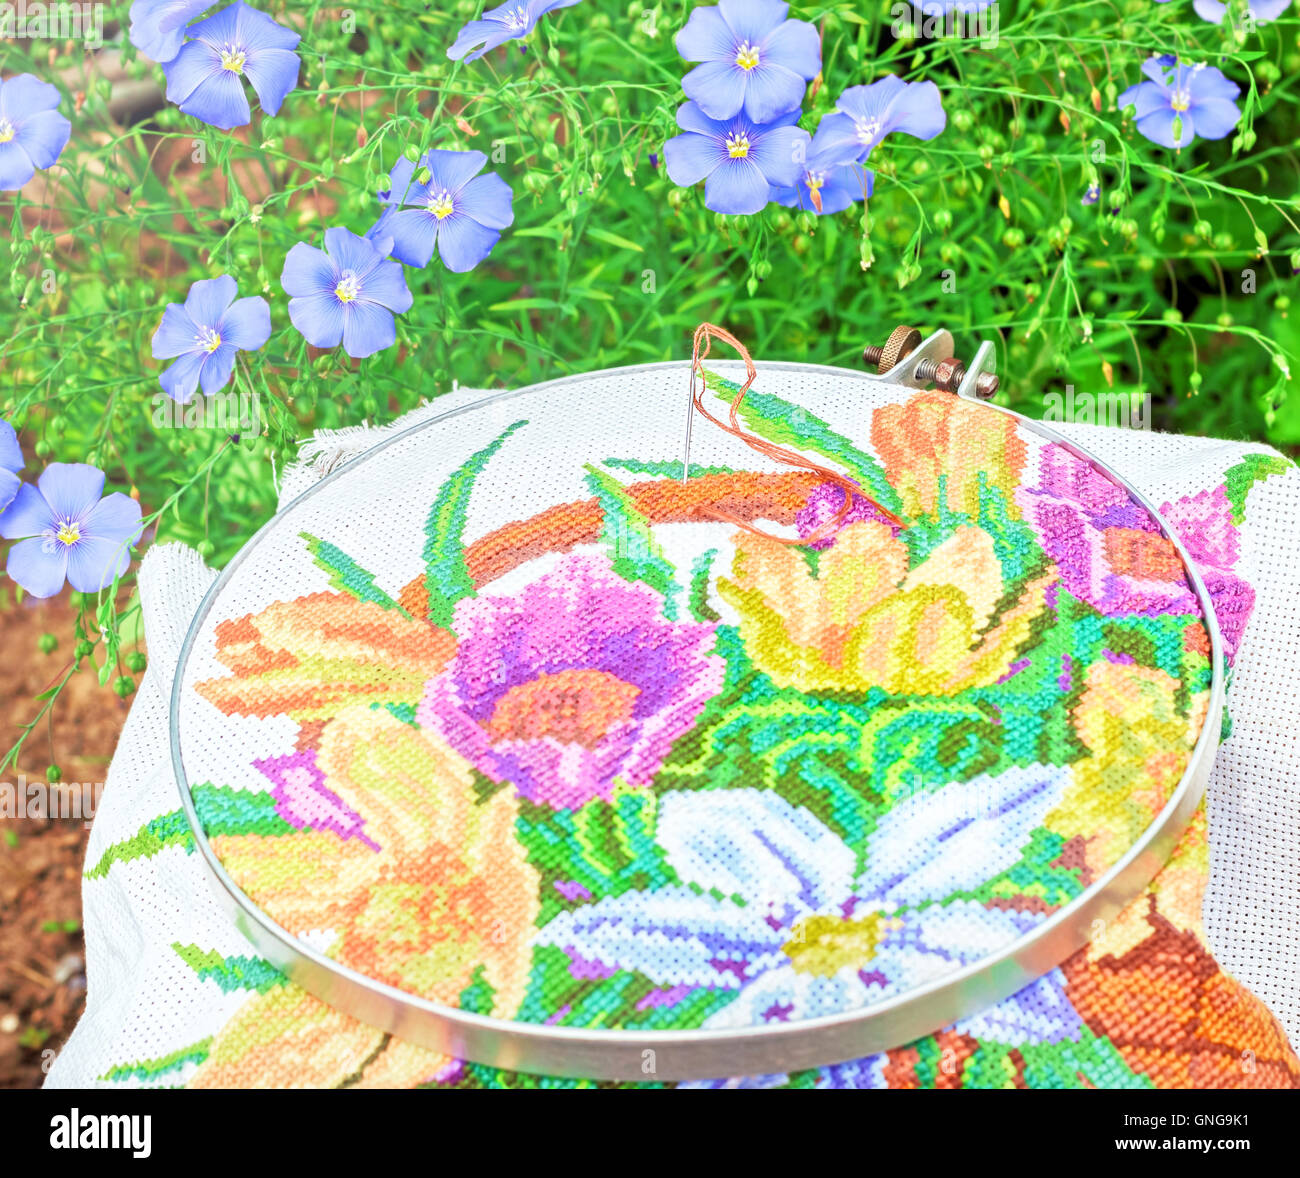 Schöne Stickereien und Blumen von blauem Leinen am sonnigen Sommertag Stockfoto